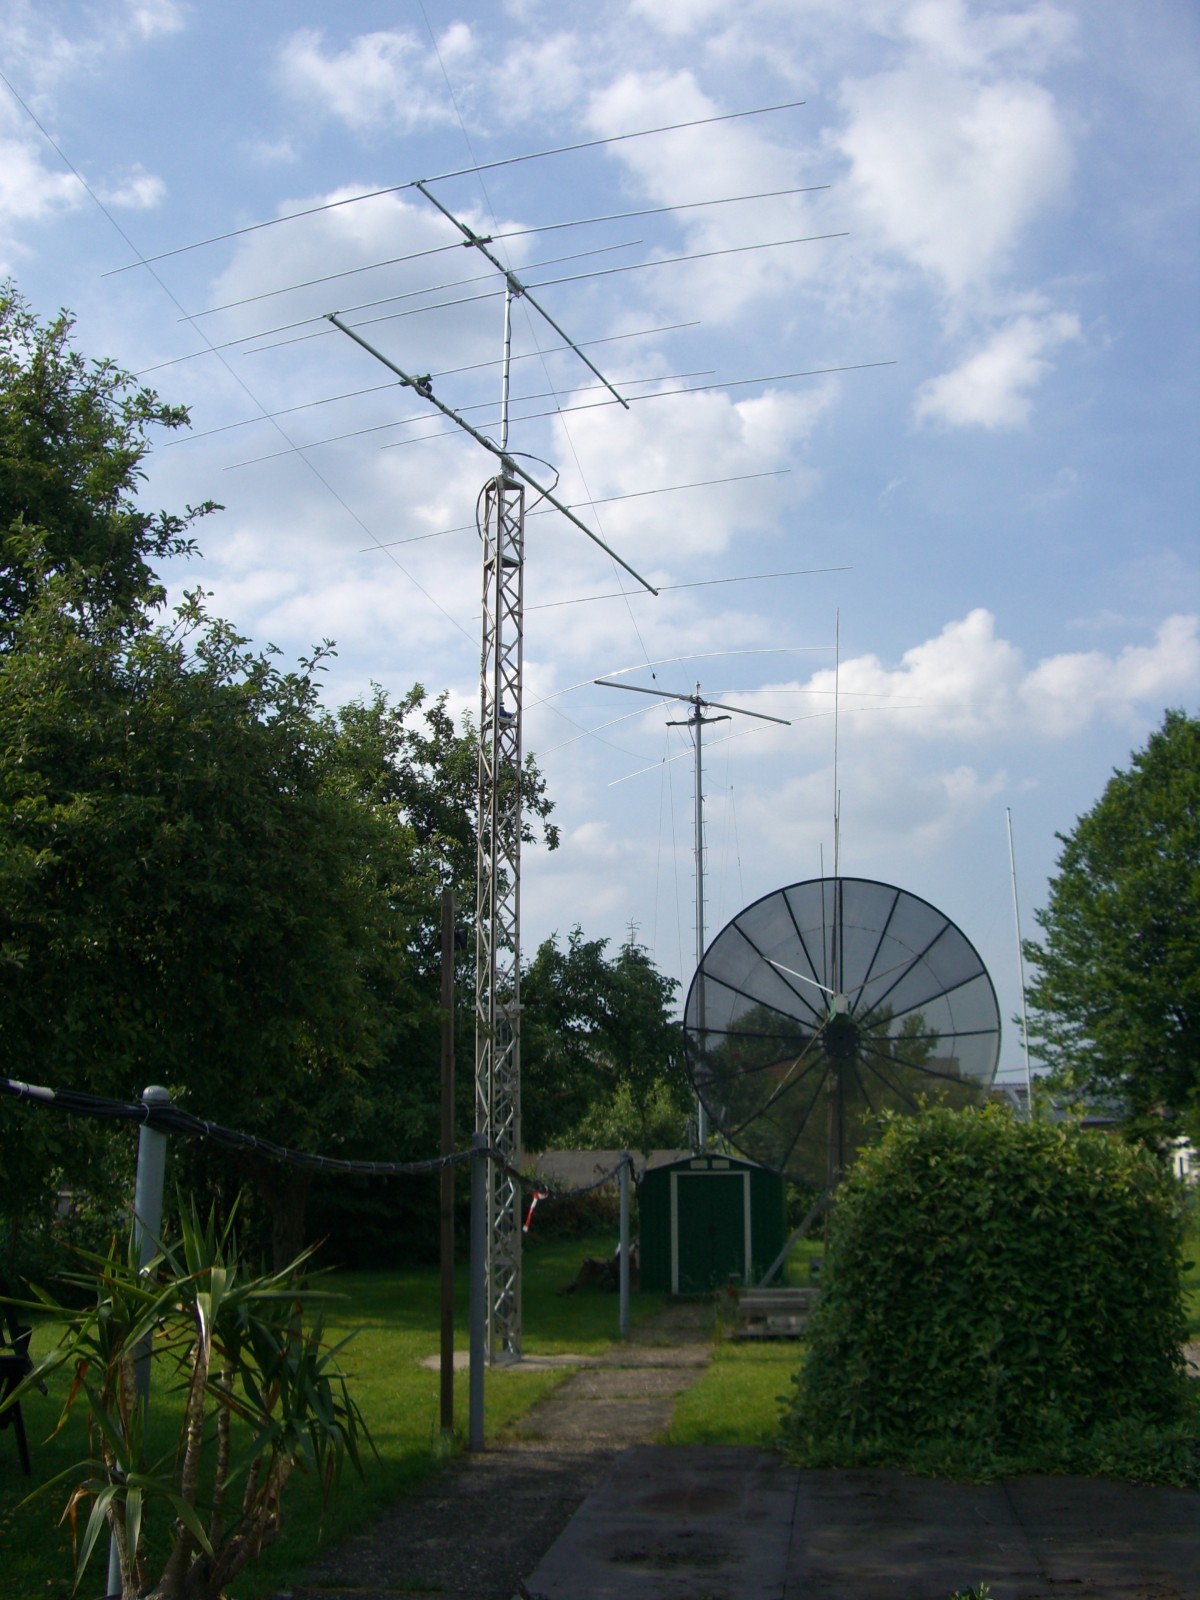 KW-Antennen bei DL8LR